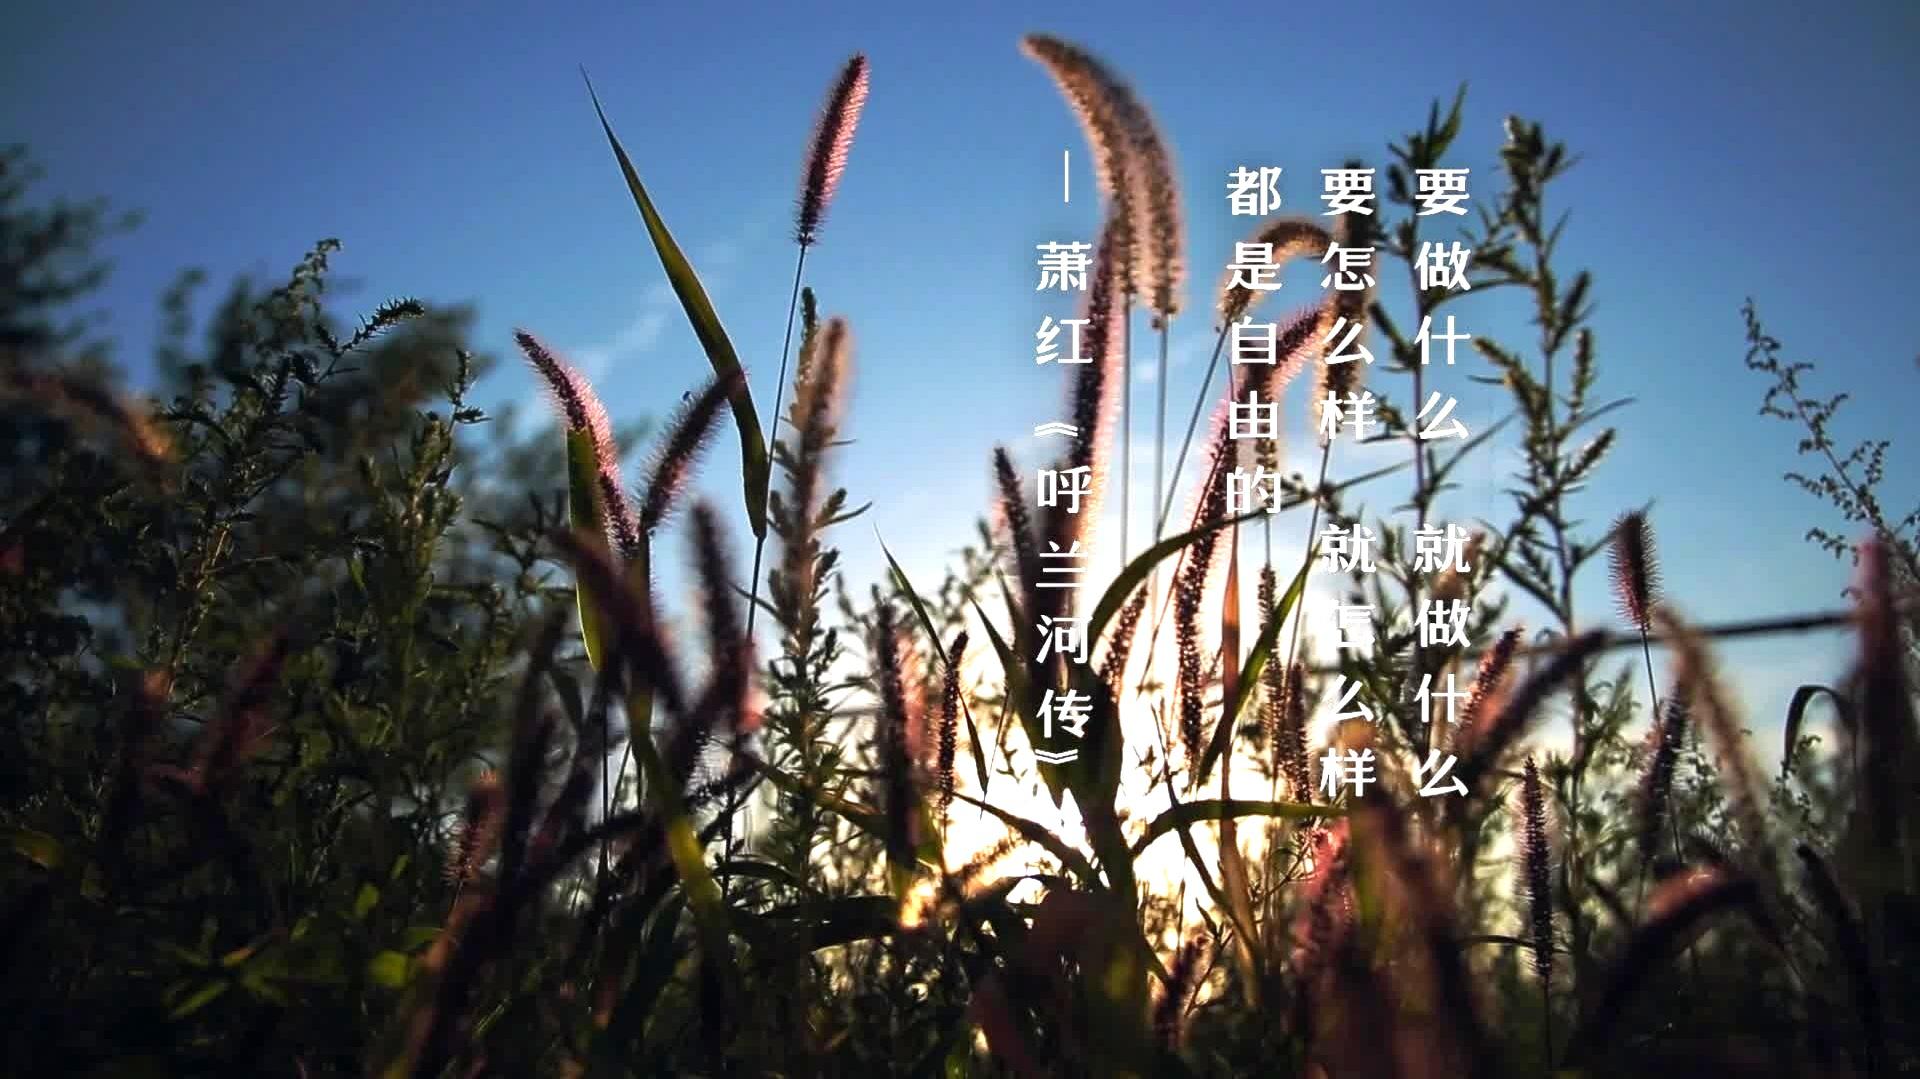 宋冬野 - 《卡比巴拉的海》 录制花絮